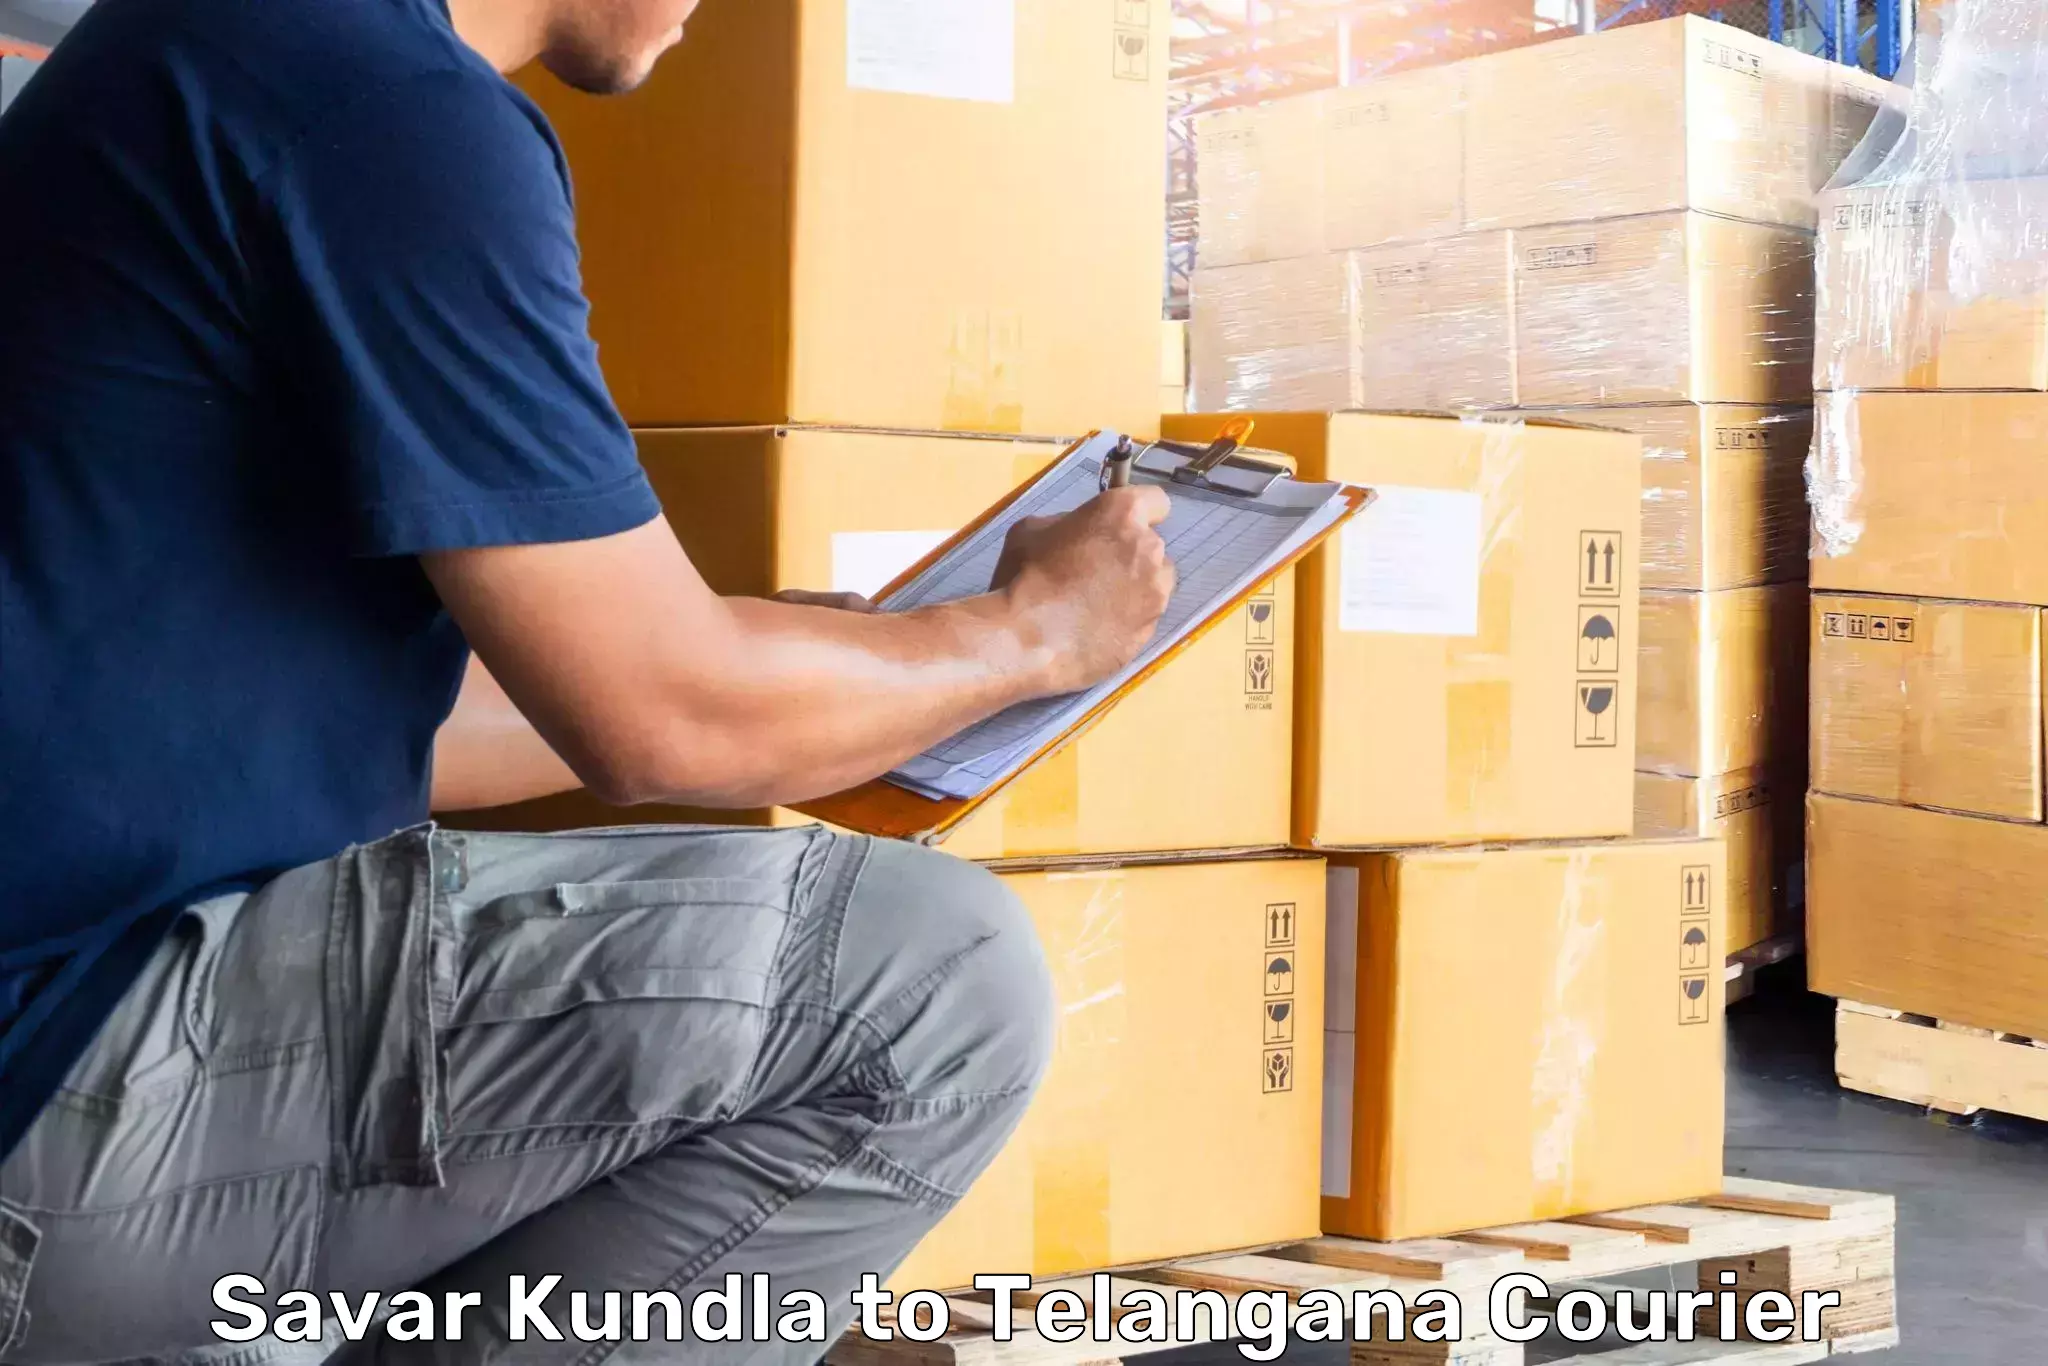 Luggage shipment processing Savar Kundla to Kothagudem